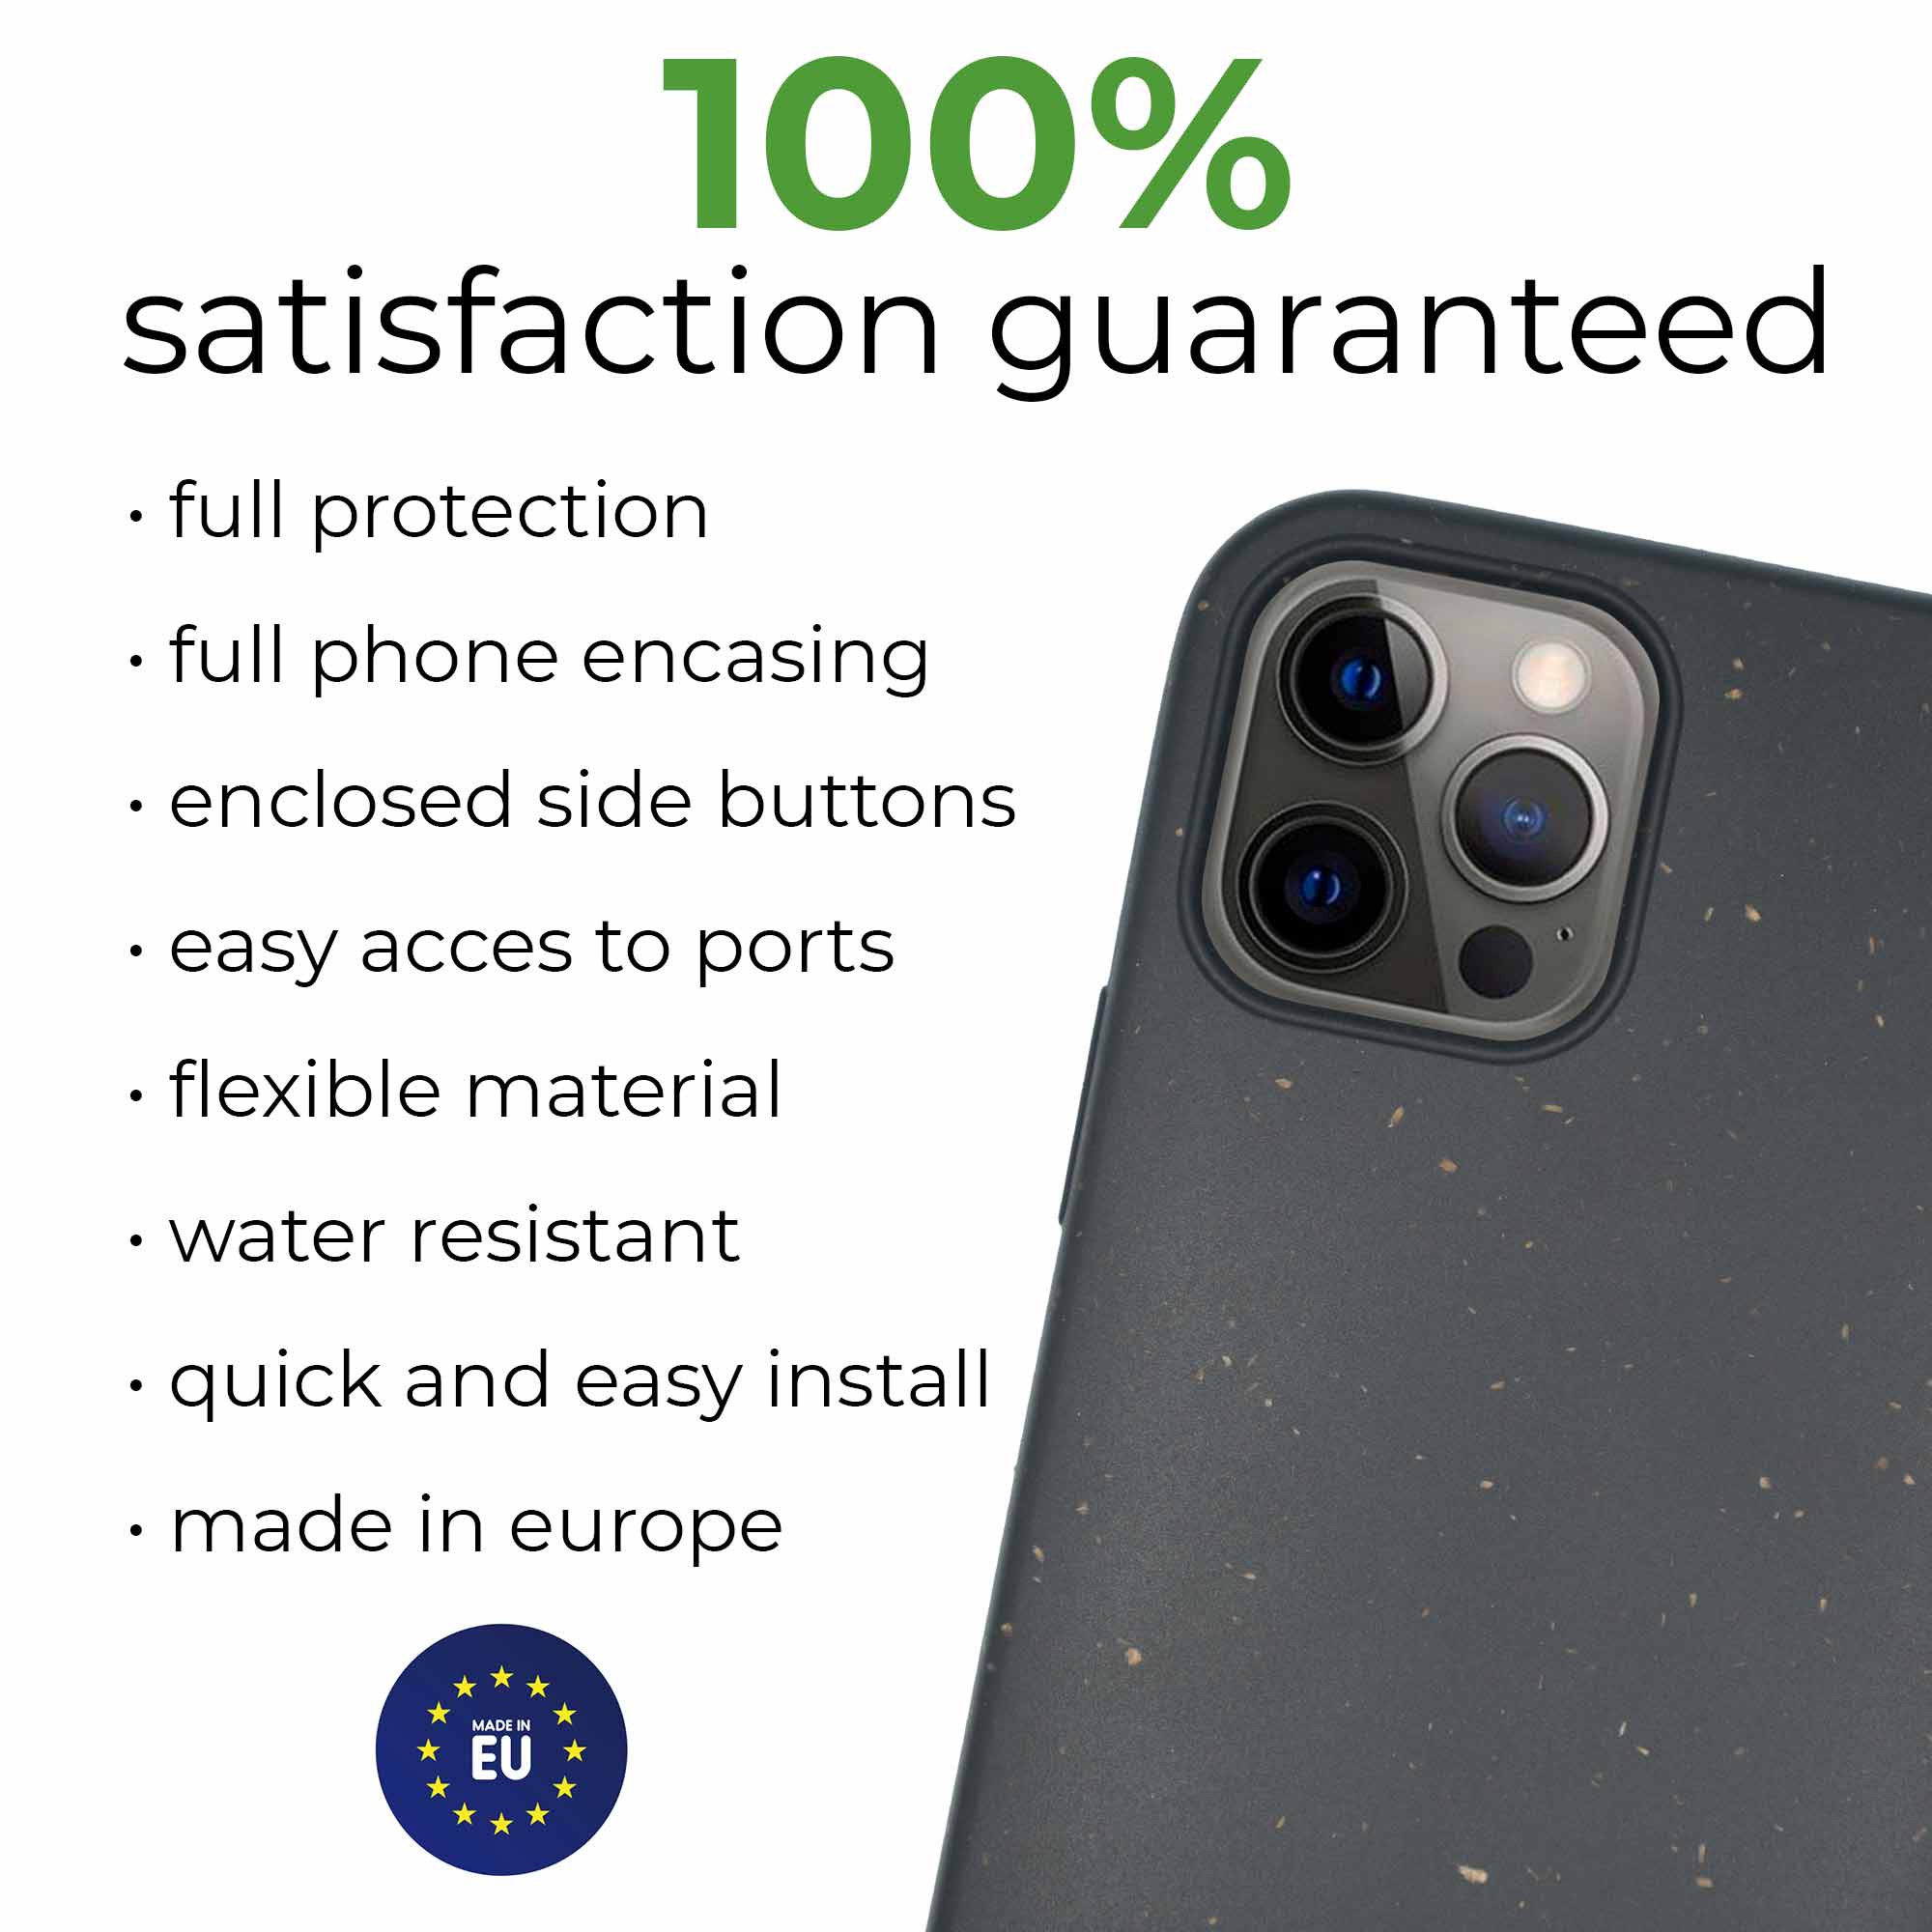 Proteção total e satisfação com a capa de telefone biodegradável